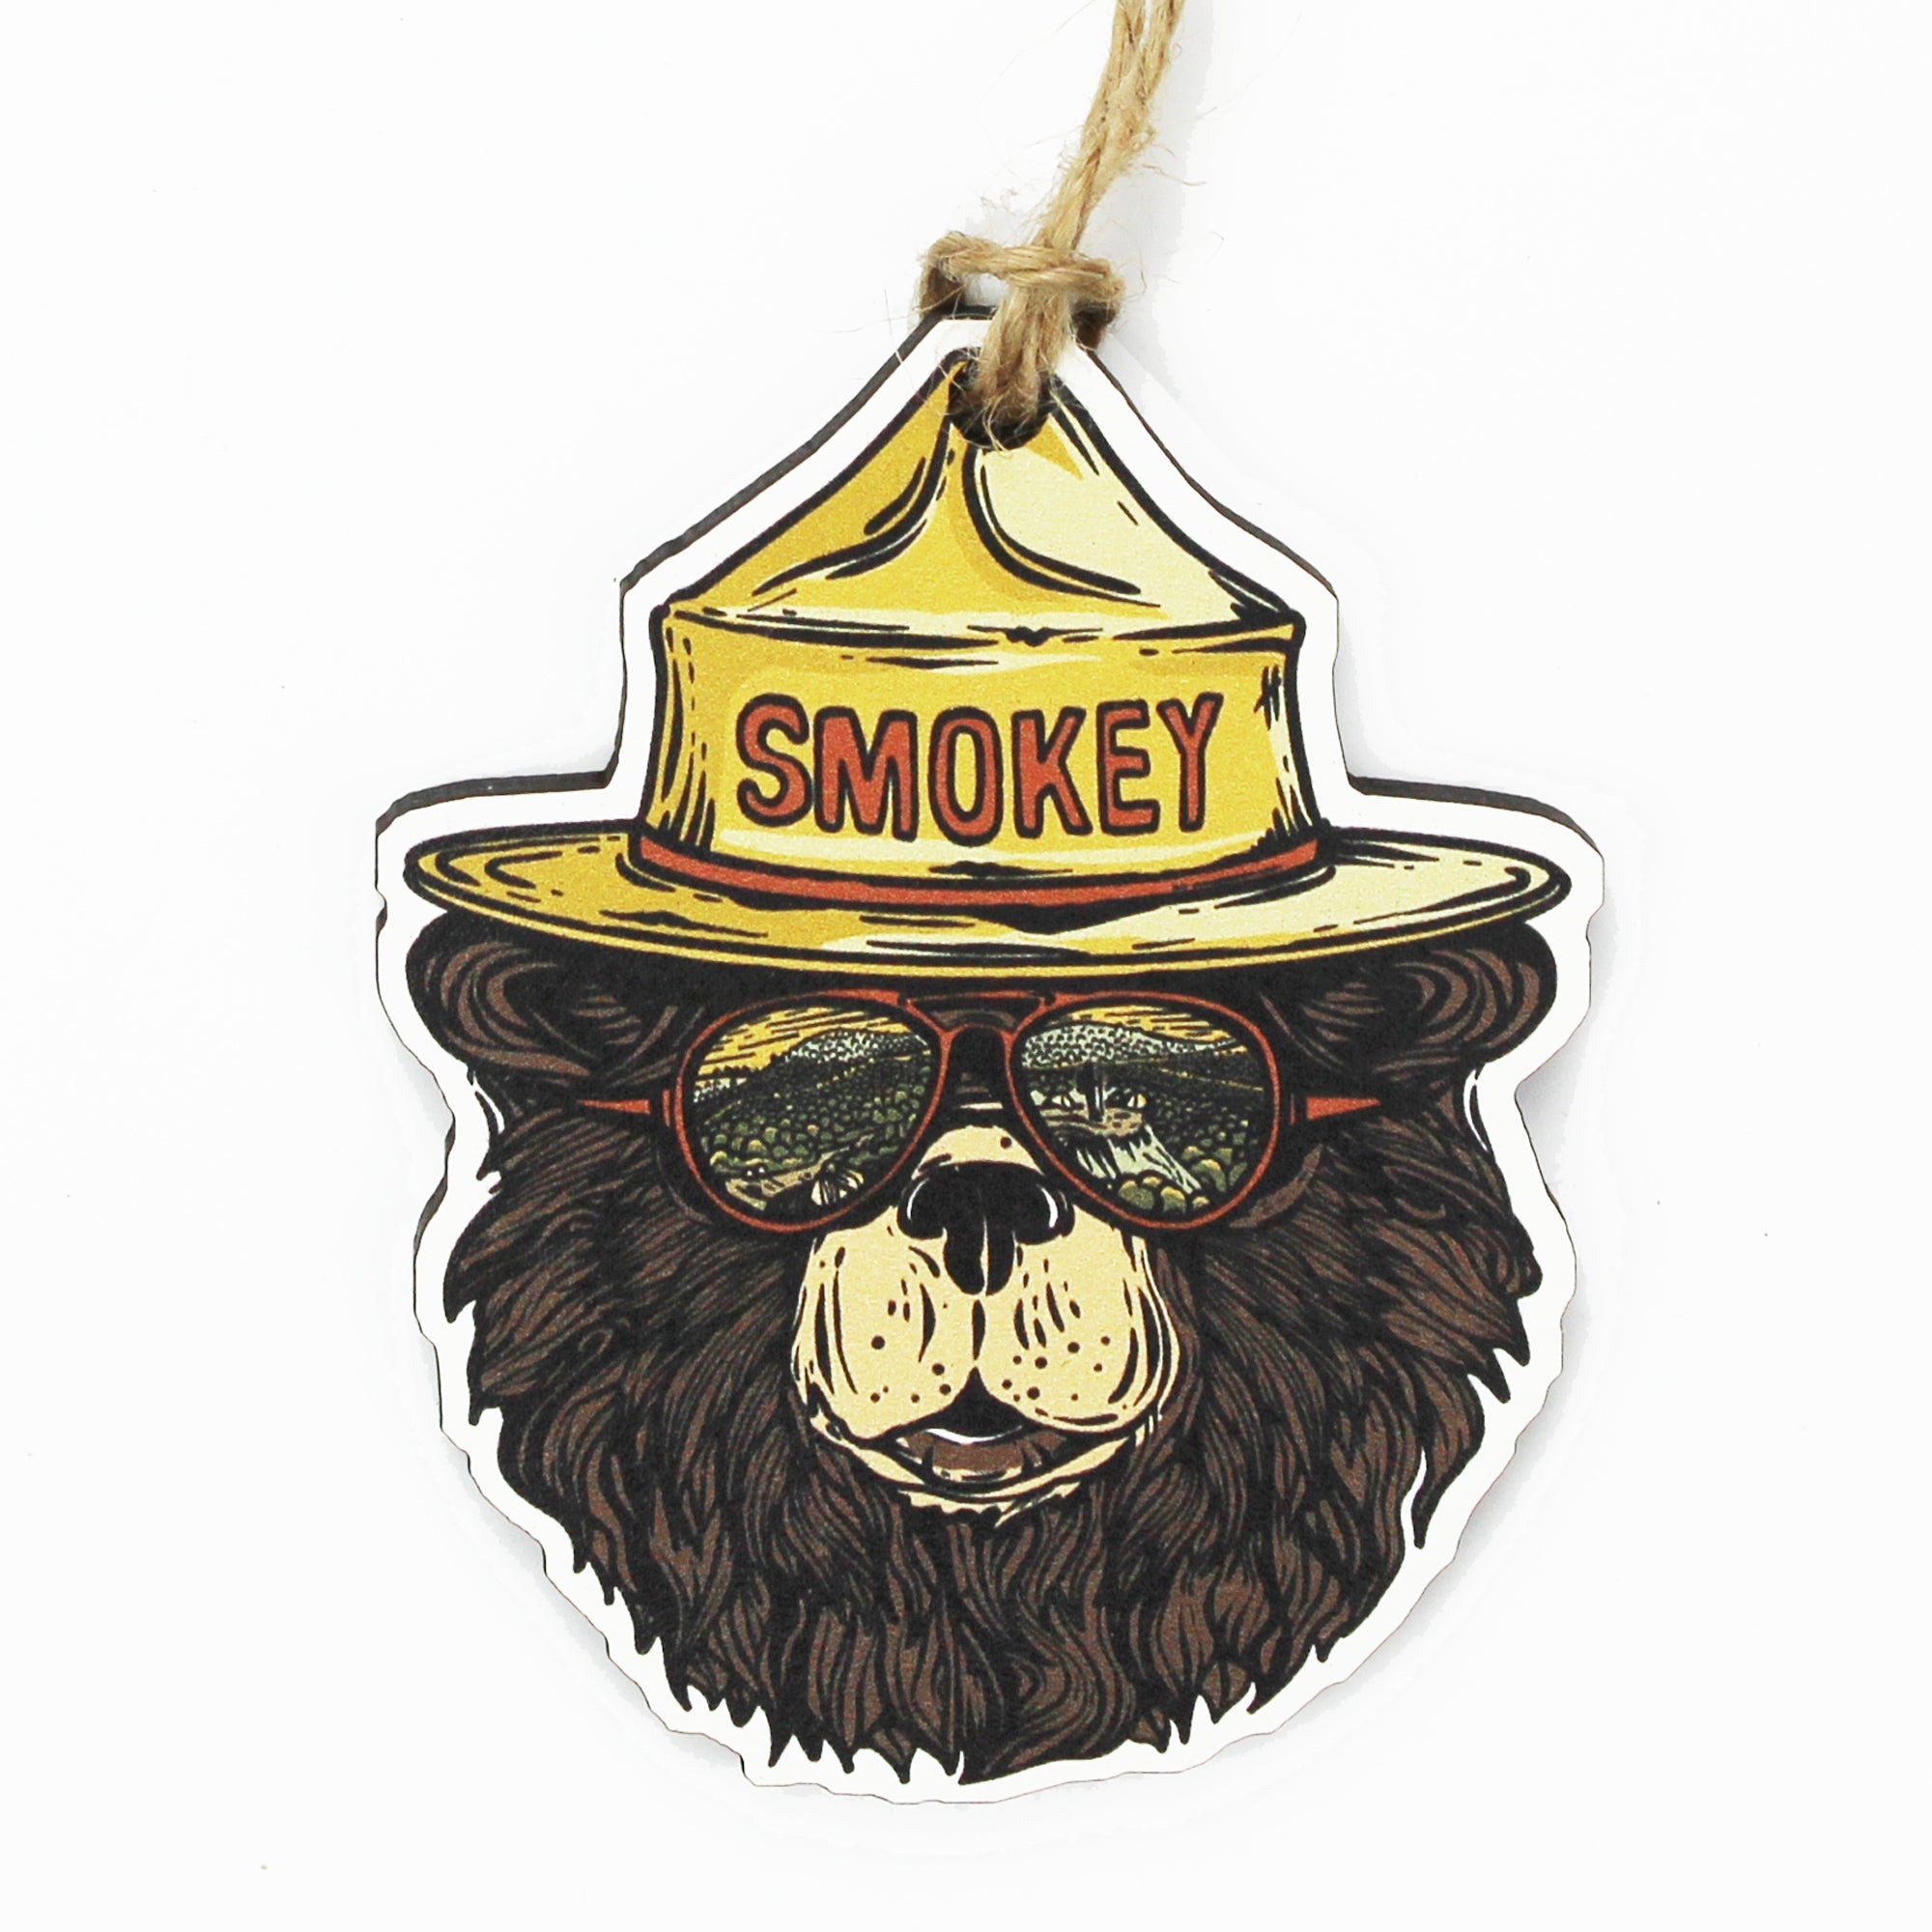 Smokey Groovy Bear Trucker Hat